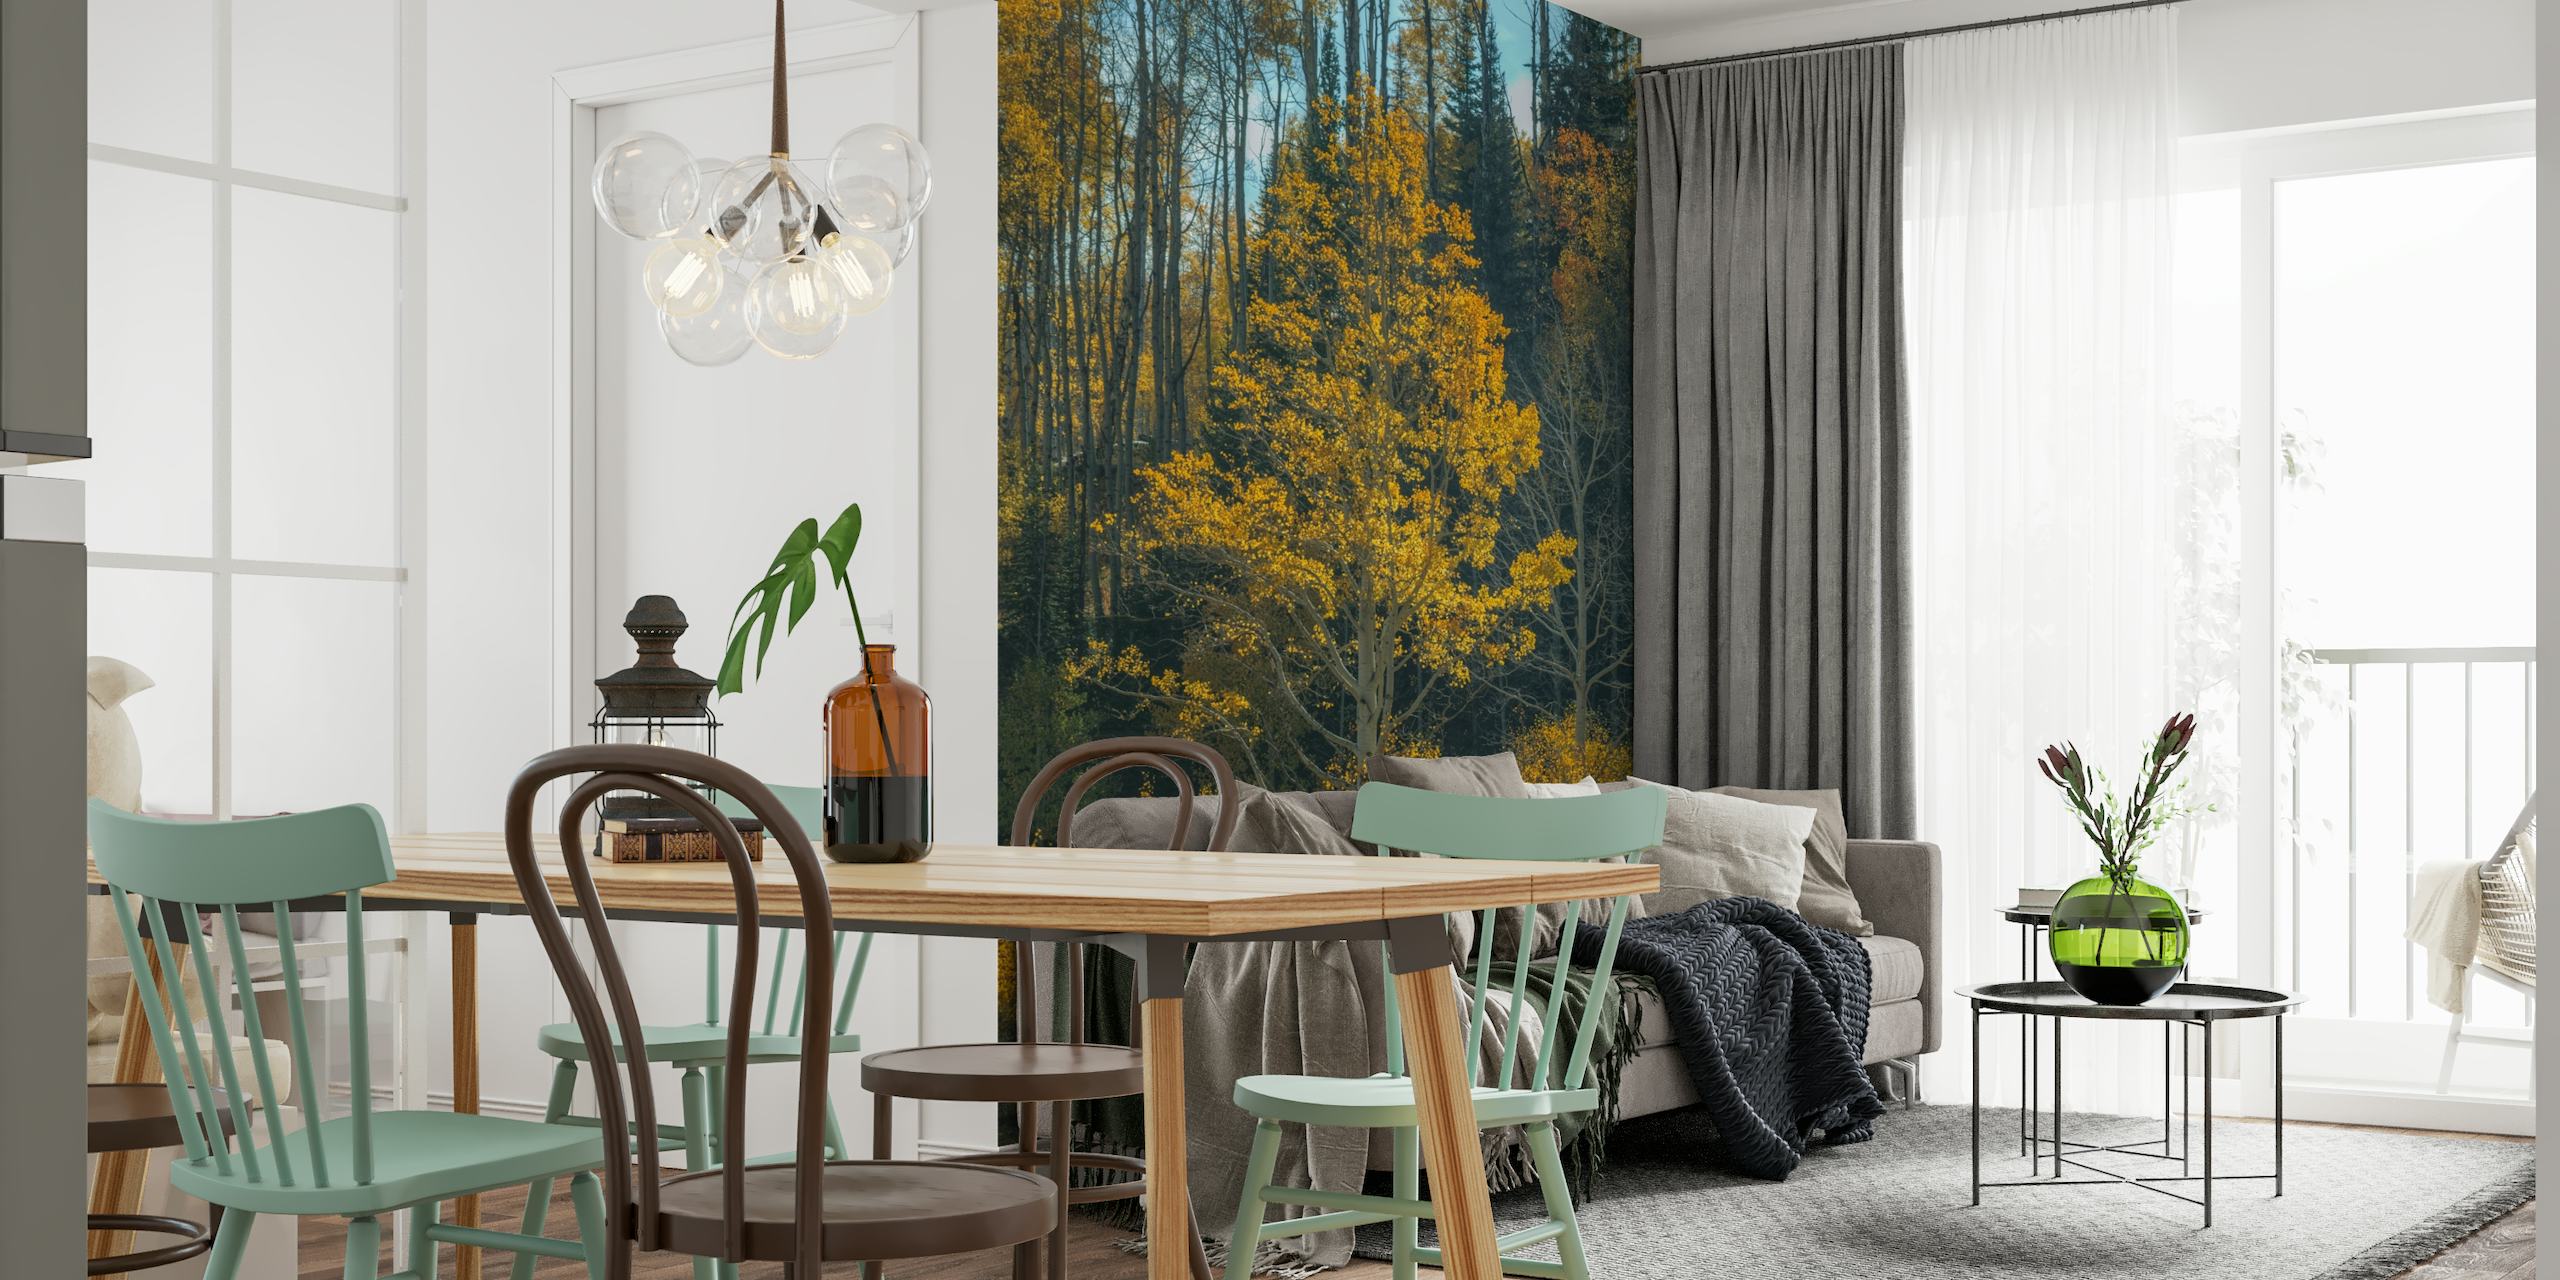 Vægmaleri af et træ med gyldengule blade, der ligner flammer mod en skovklædt baggrund